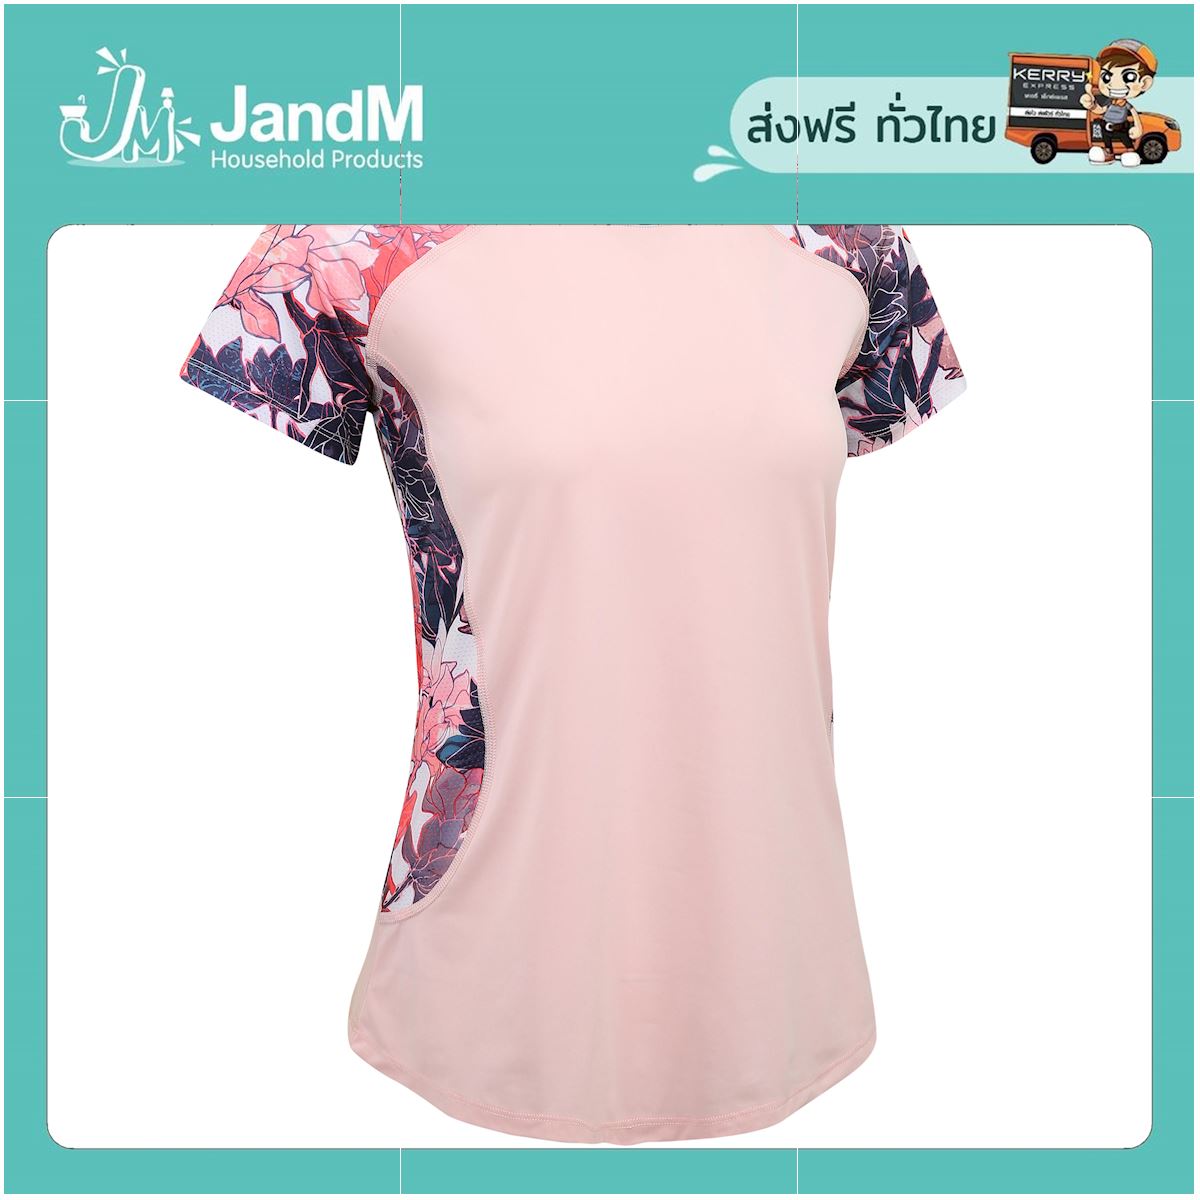 JandM เสื้อยืดผู้หญิงสำหรับการออกกำลังกายแบบคาร์ดิโอในฟิตเนสรุ่น 500 (สีชมพูอ่อน) ส่งkerry มีเก็บเงินปลายทาง